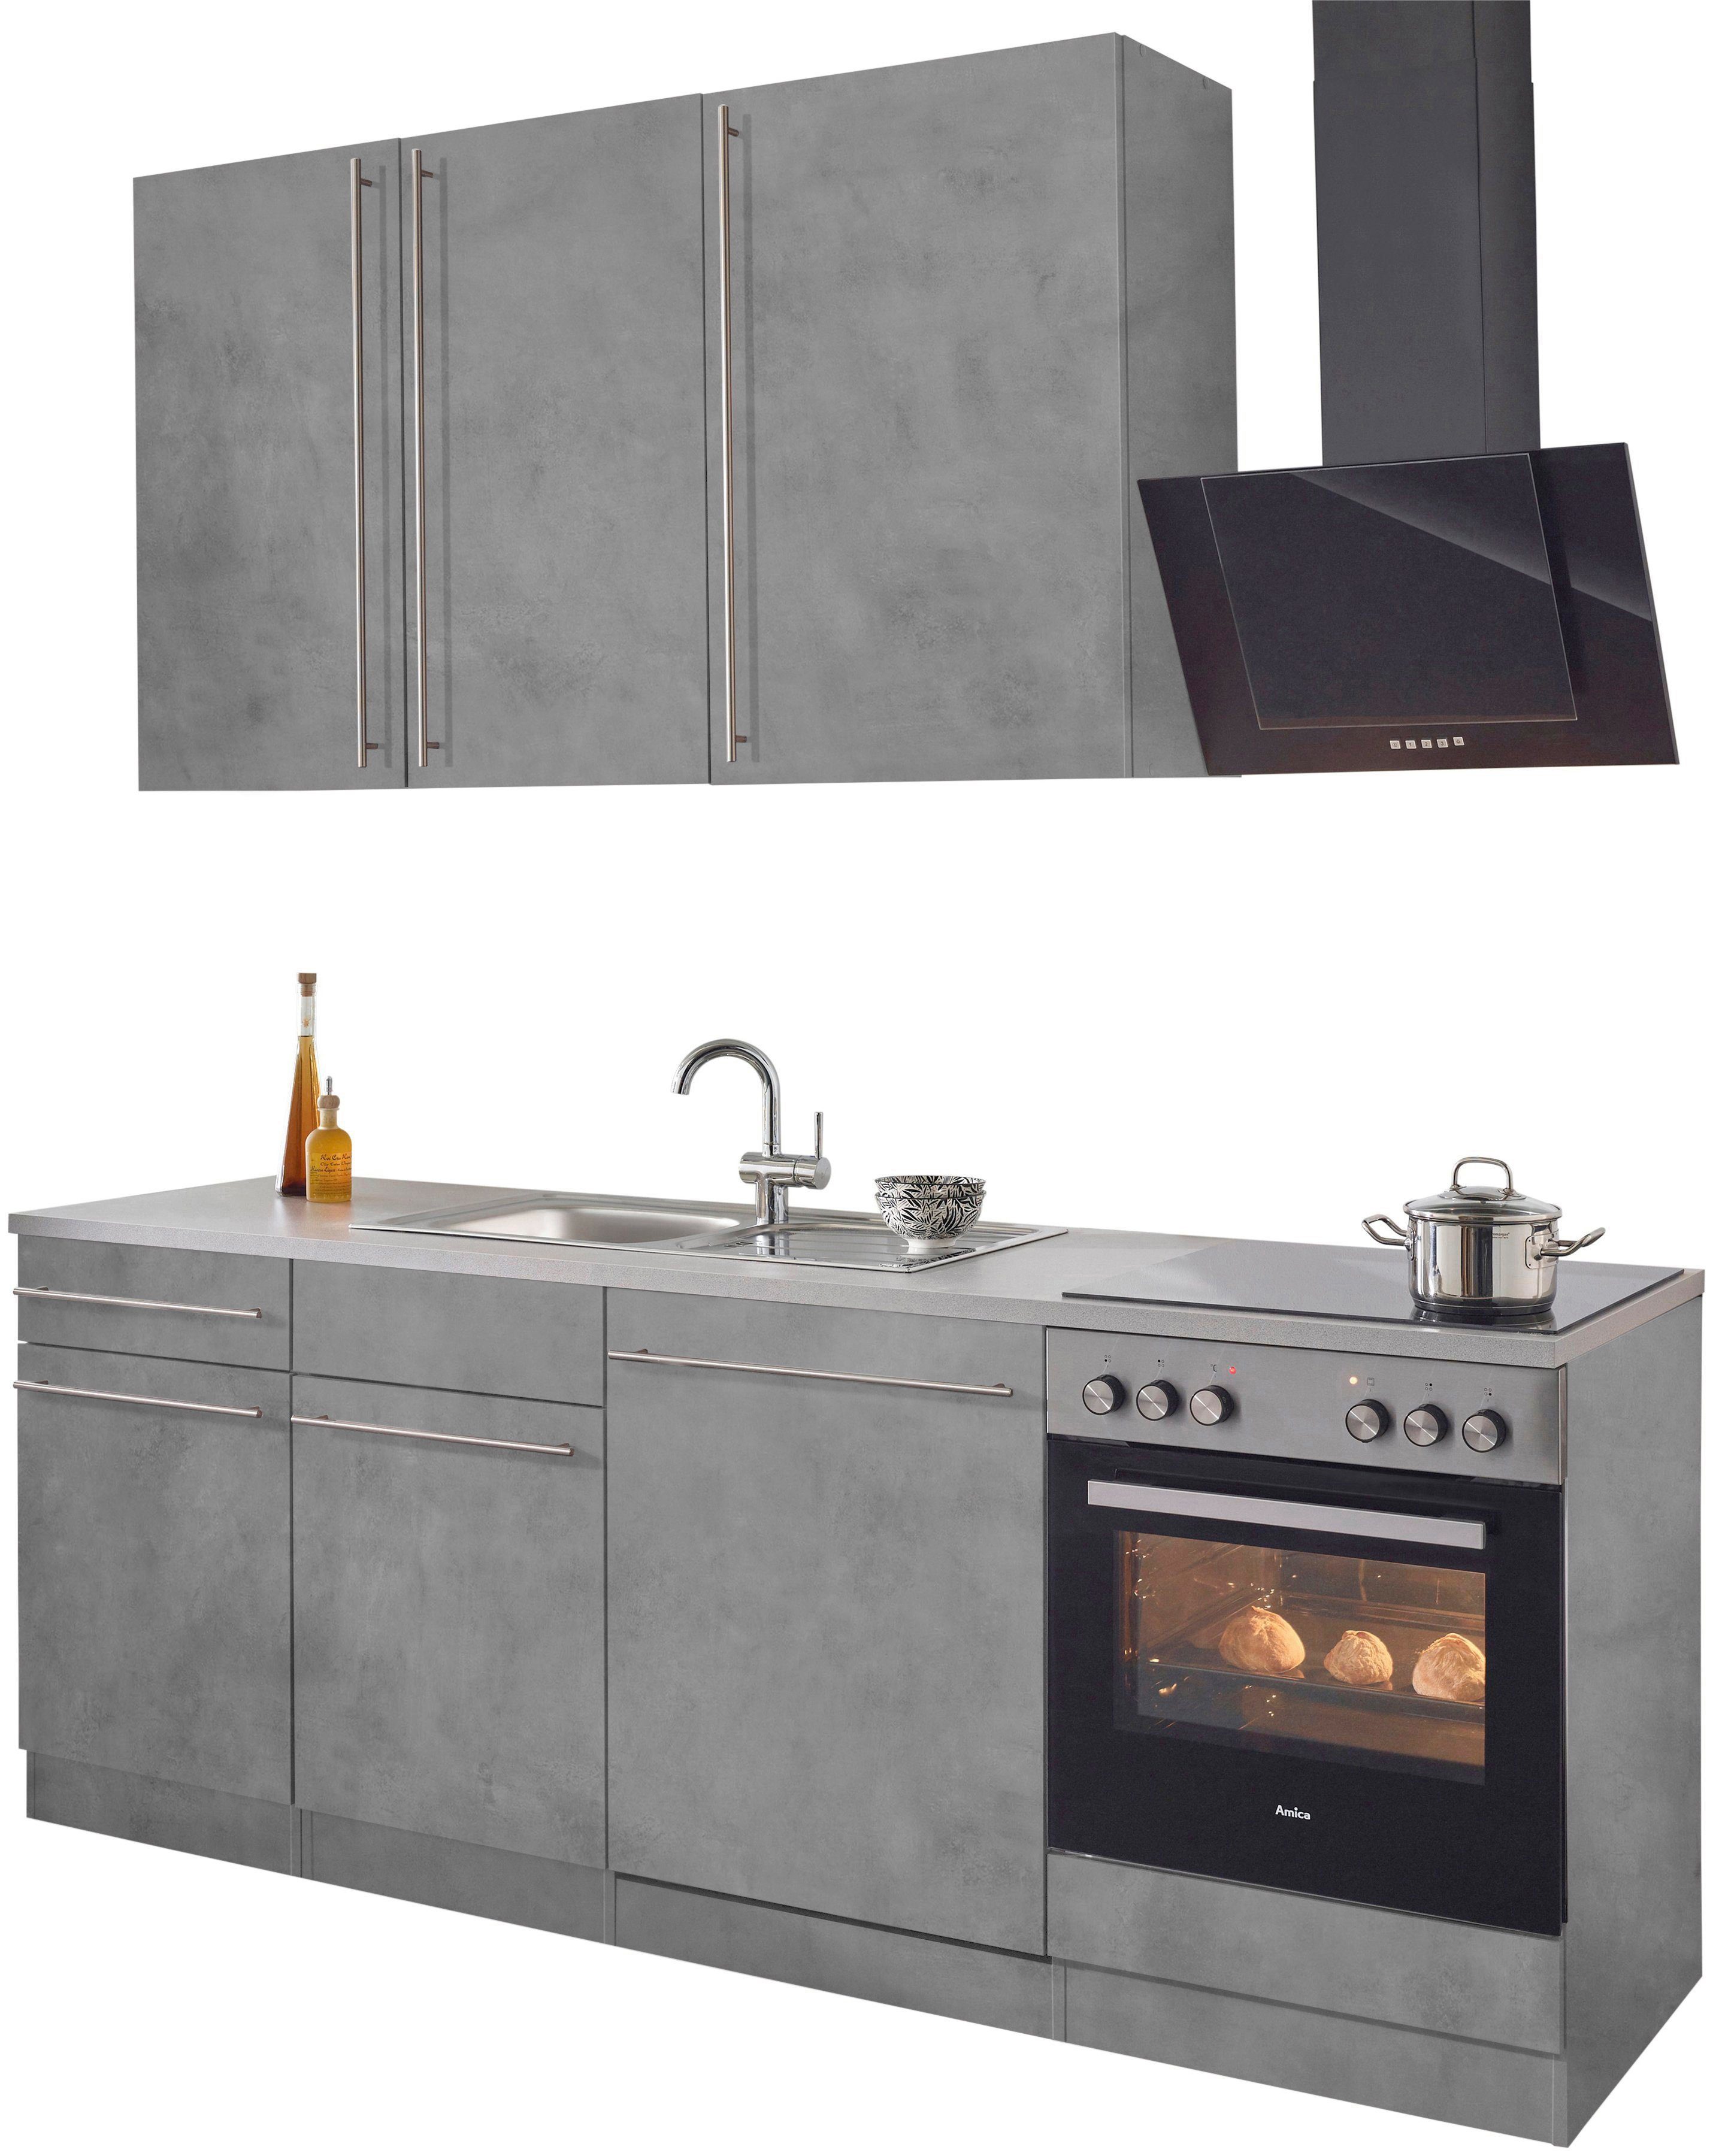 Chicago, Breite mit betonfarben Küchen cm 220 Küchenzeile Betonfarben wiho | E-Geräten,